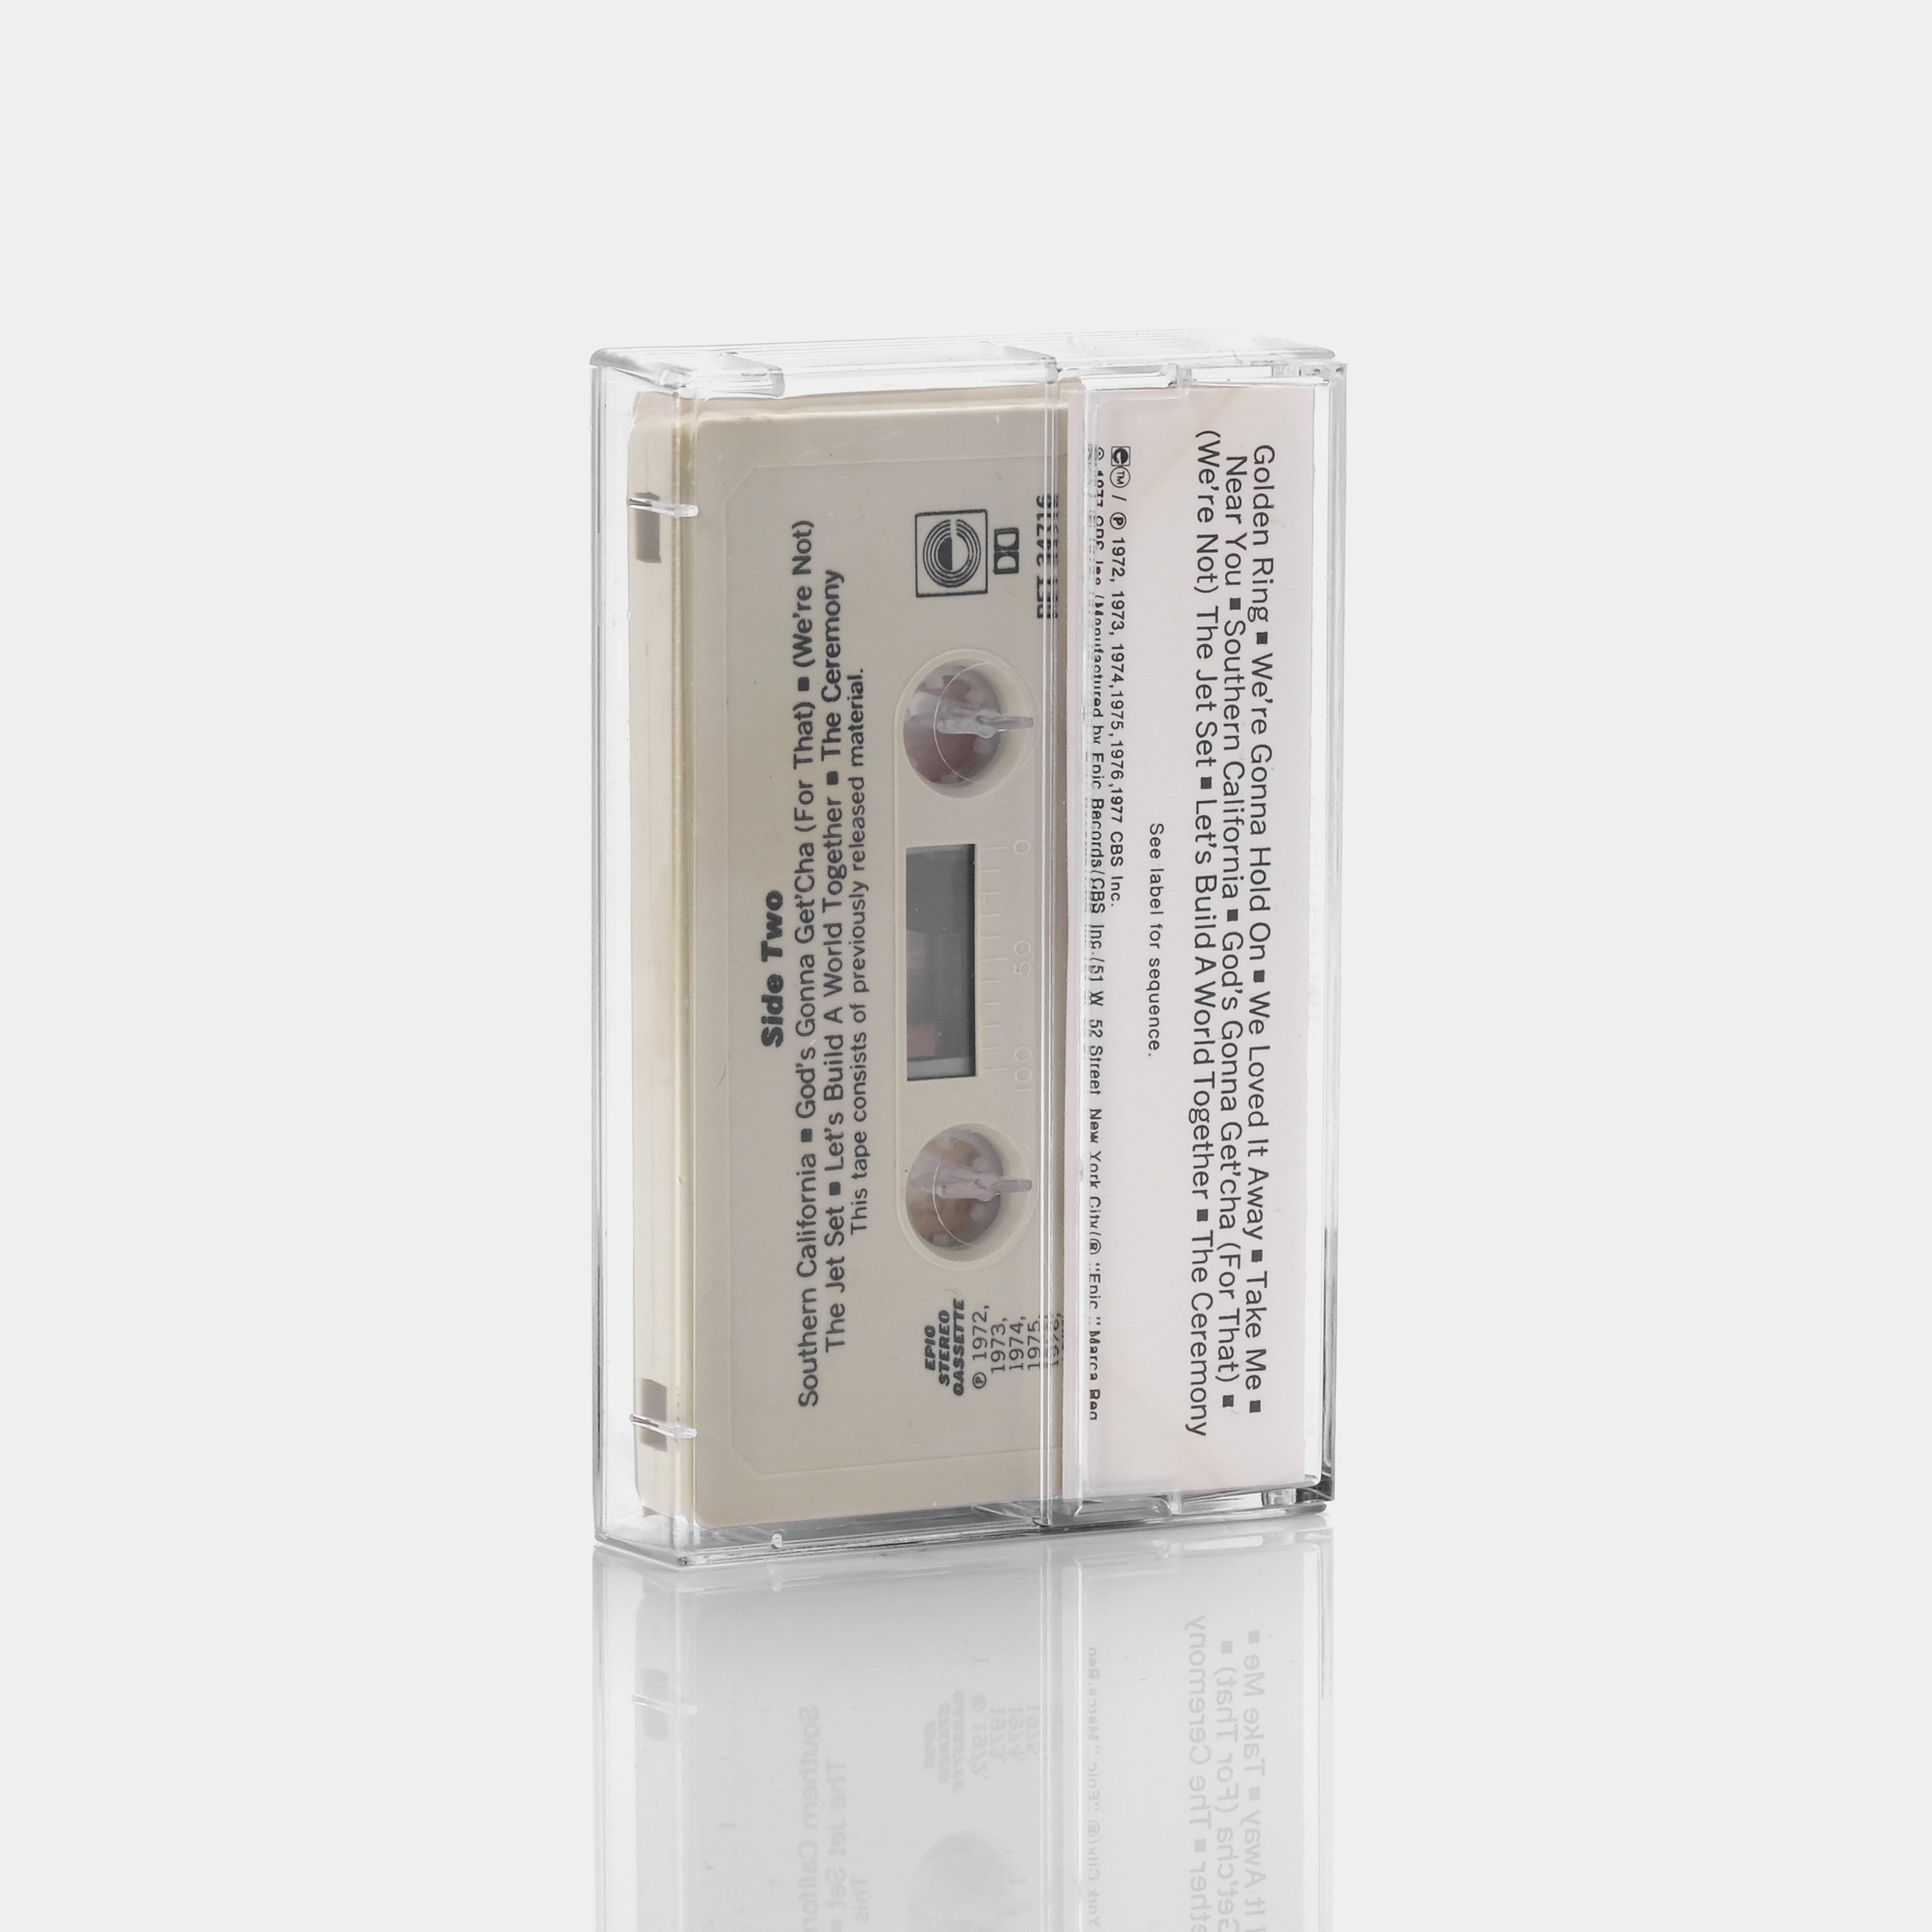 George Jones/Tammy Wynette - Greatest Hits Cassette Tape